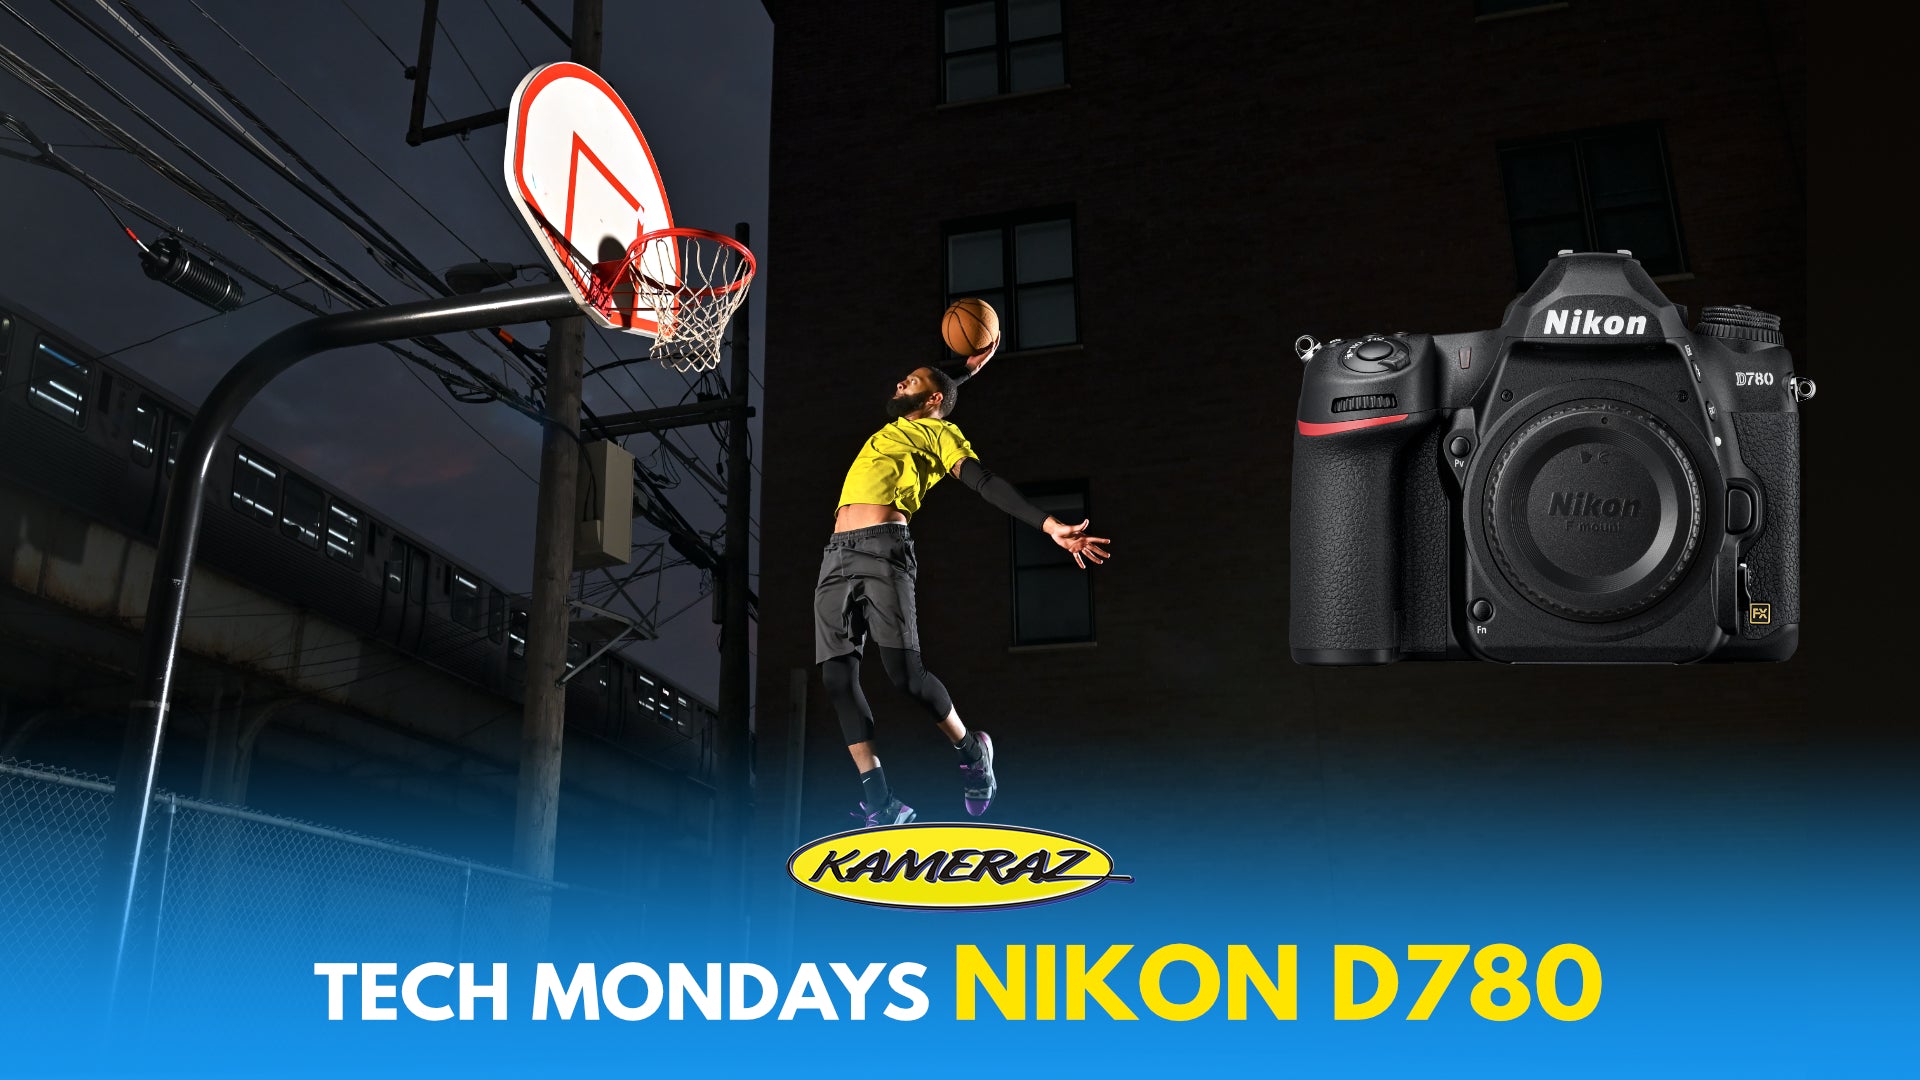 A look at the new Nikon D780 // Tech Mondays